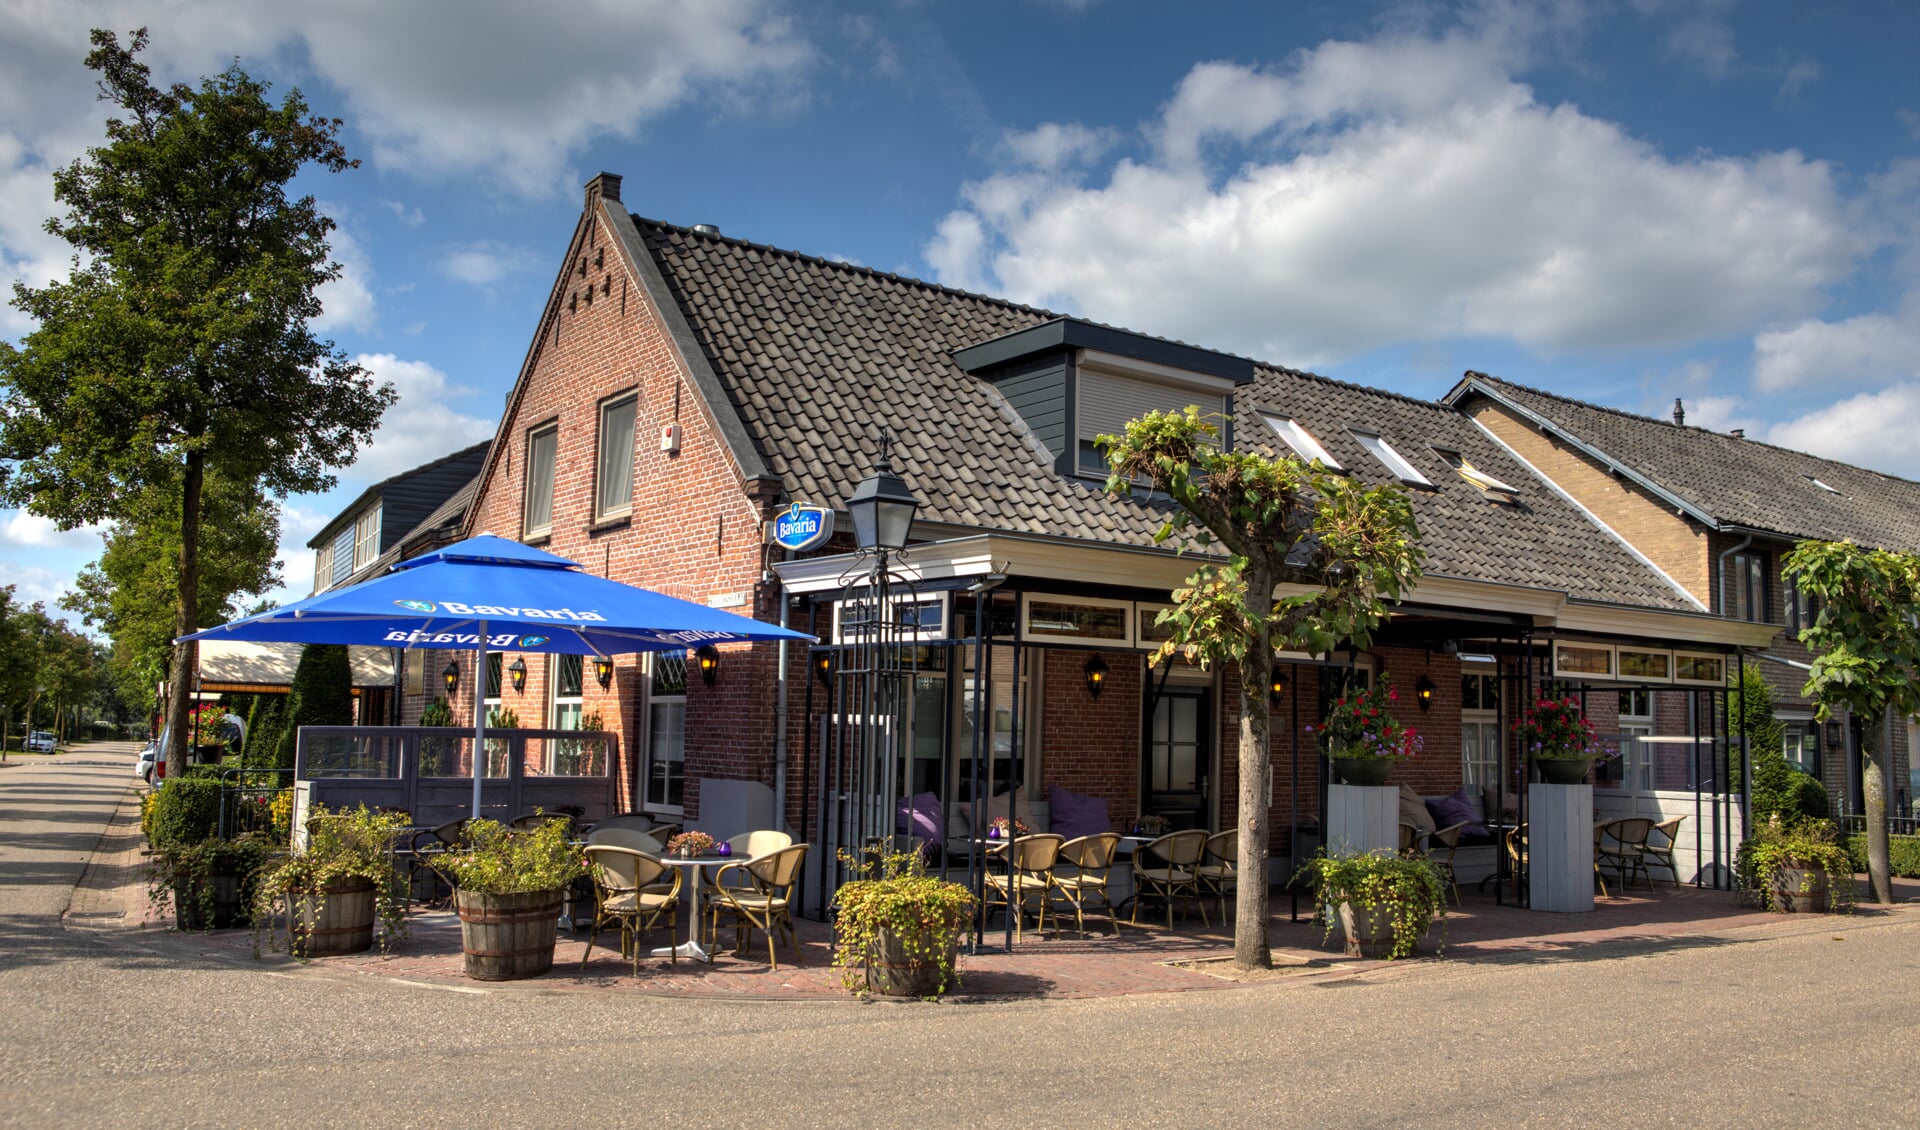 Café-Zaal Kleijngeld in Zijtaart heeft een oergezellig programma samengesteld.